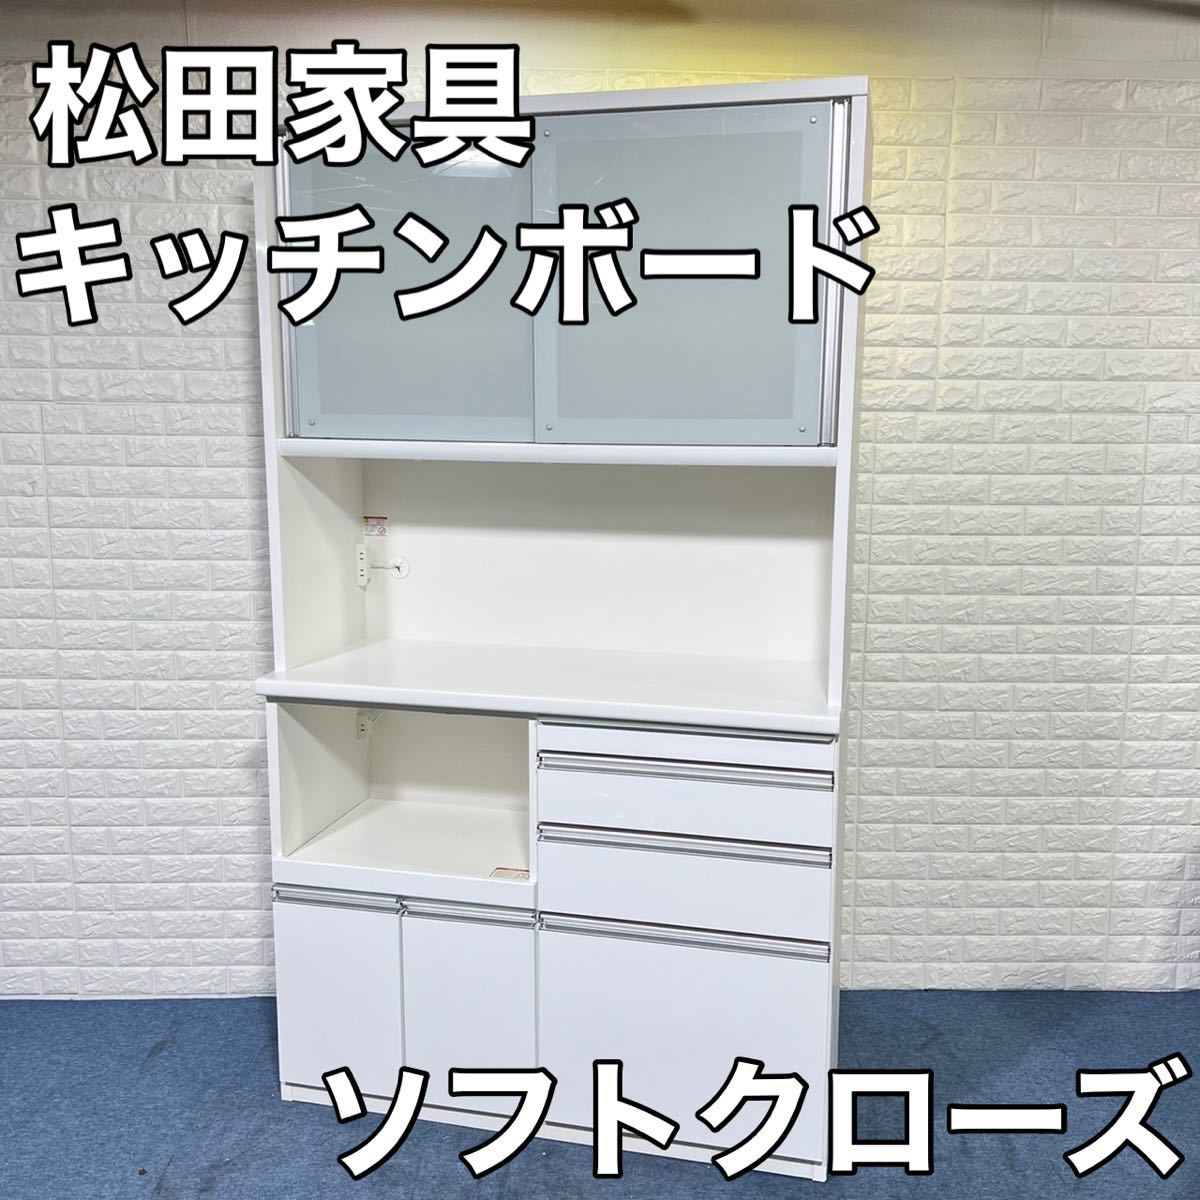 松田家具 キッチンボード 食器棚 レンジボード ソフトクローズ モイス